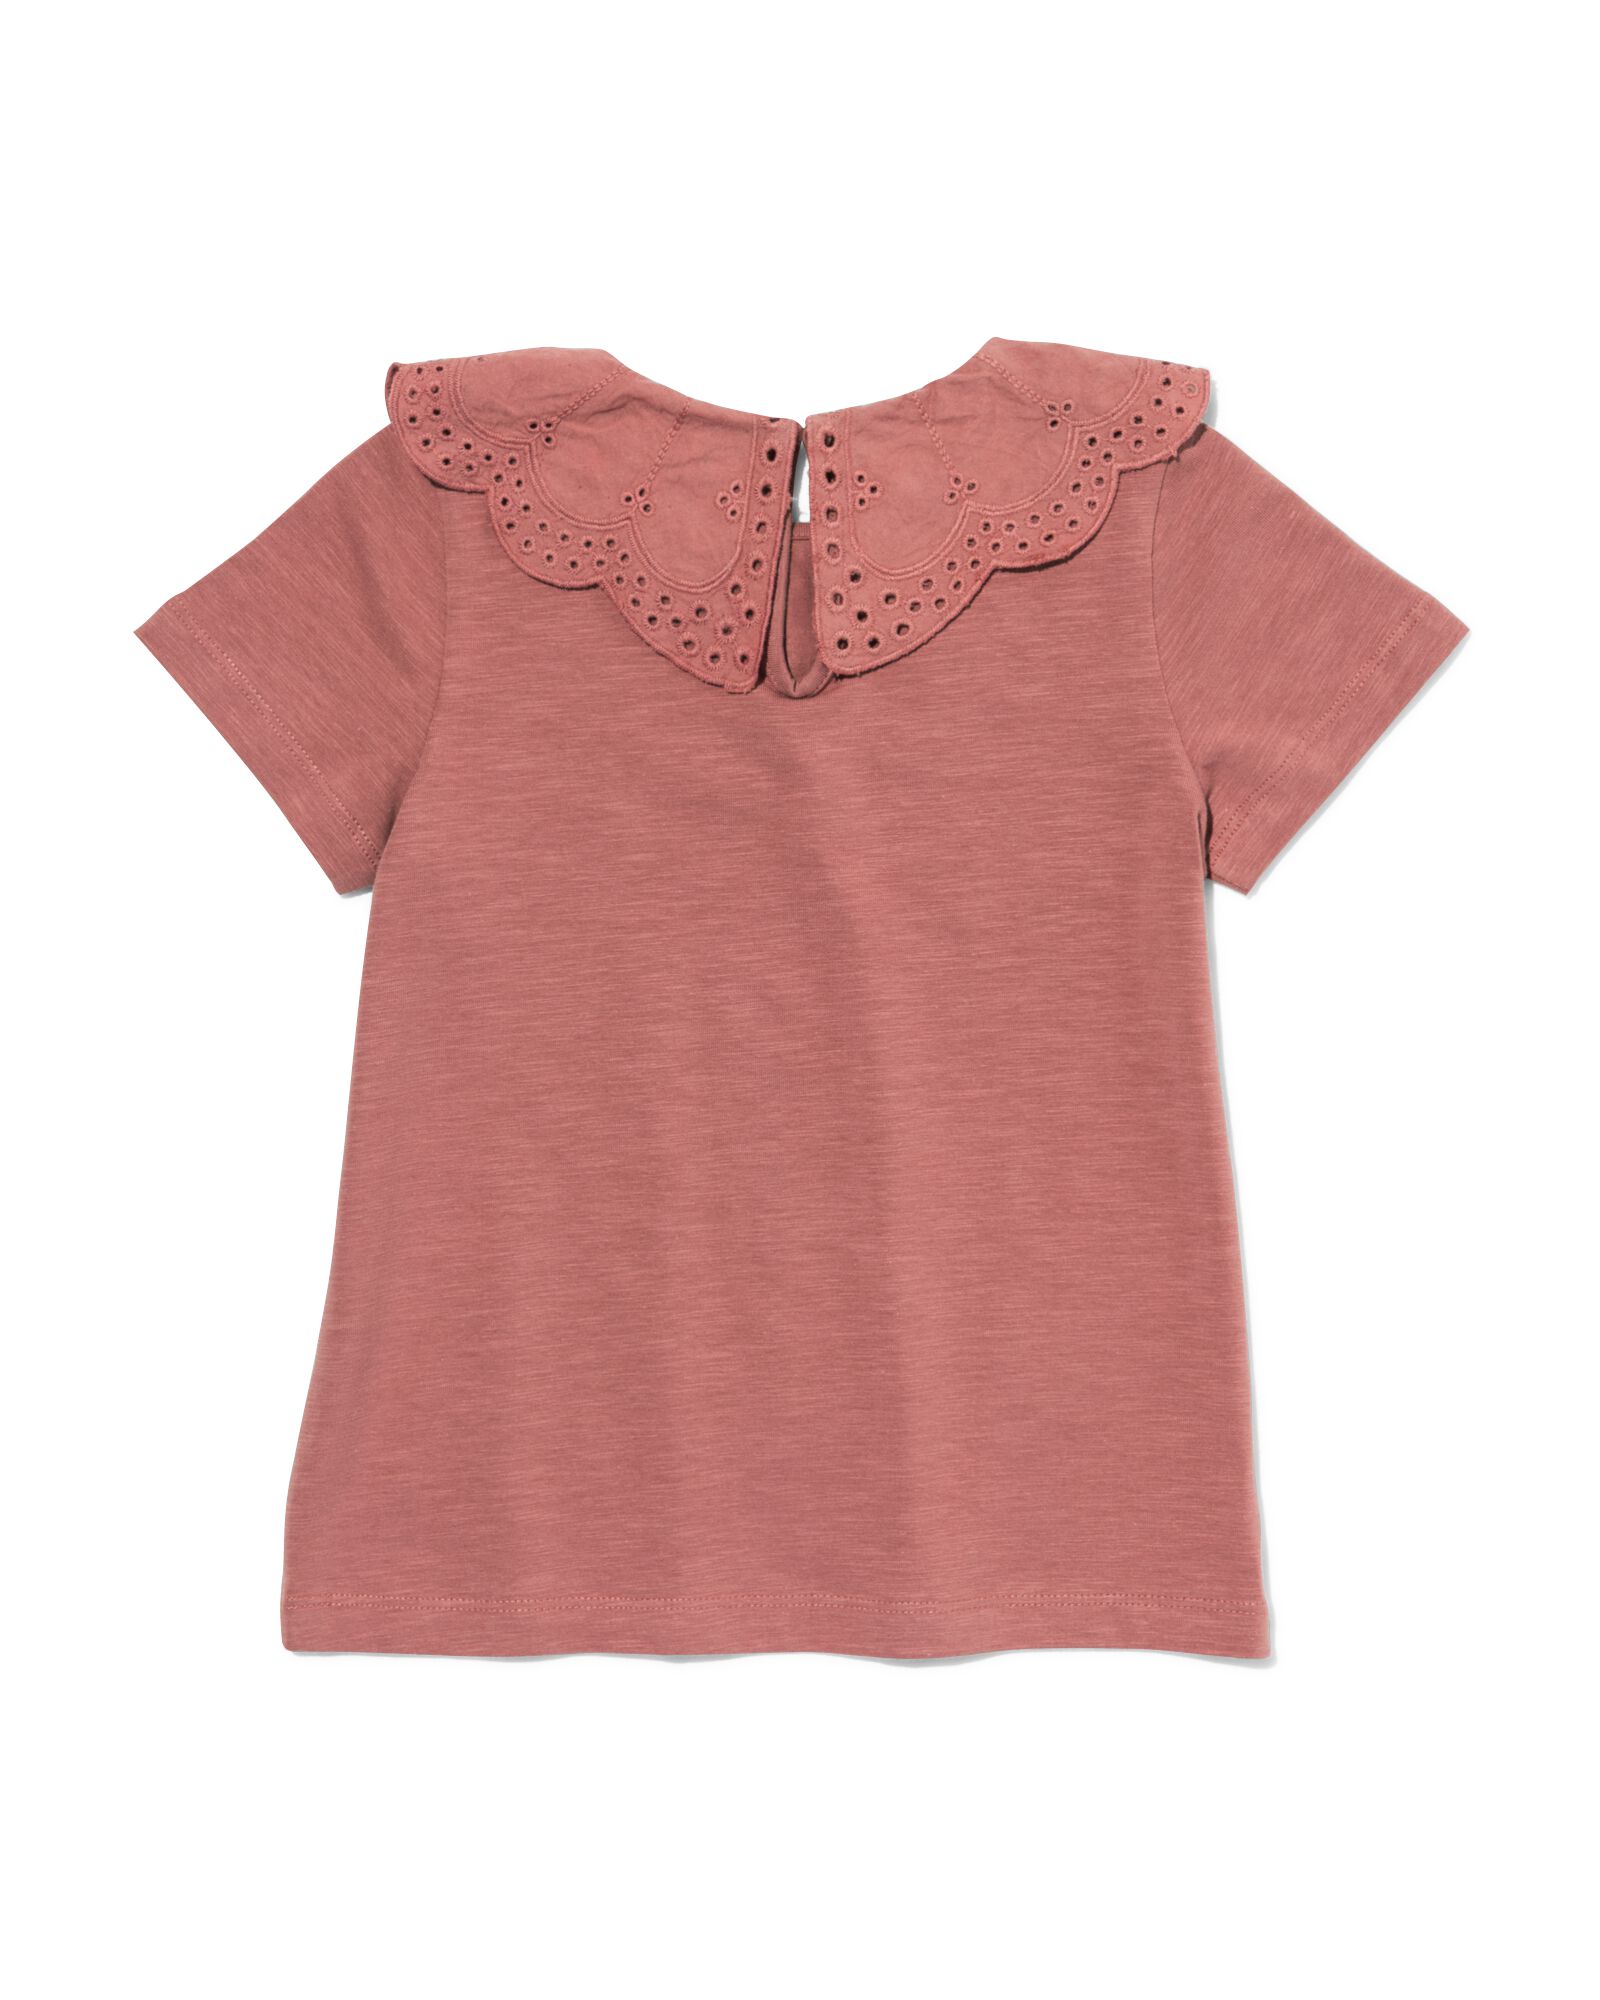 t-shirt enfant avec col en broderie roze 158/164 - 30874053 - HEMA